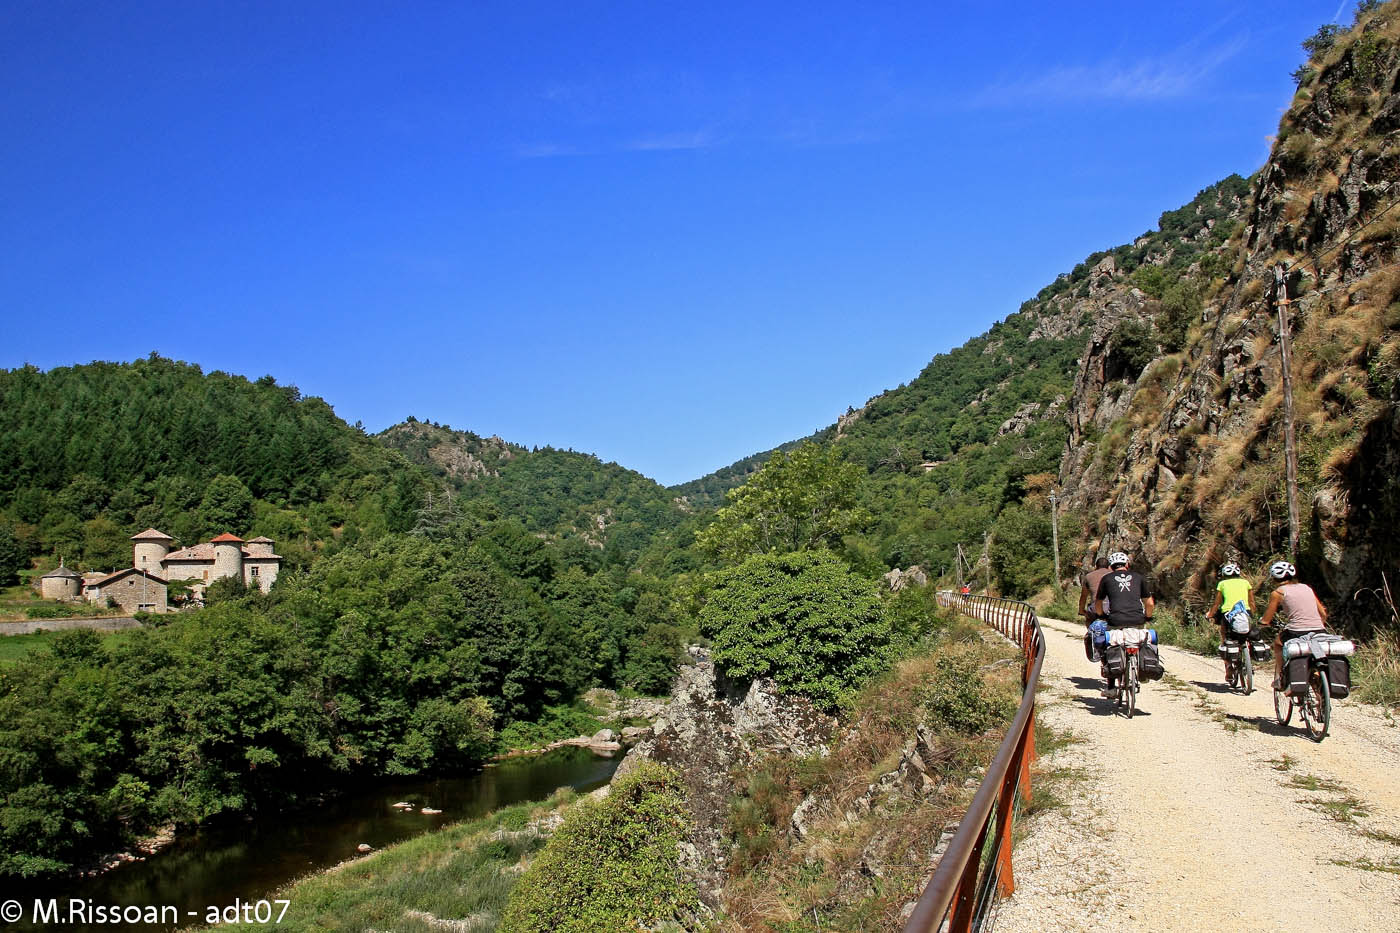 The Dolce Via from La Voulte sur Rhône to Lamastre